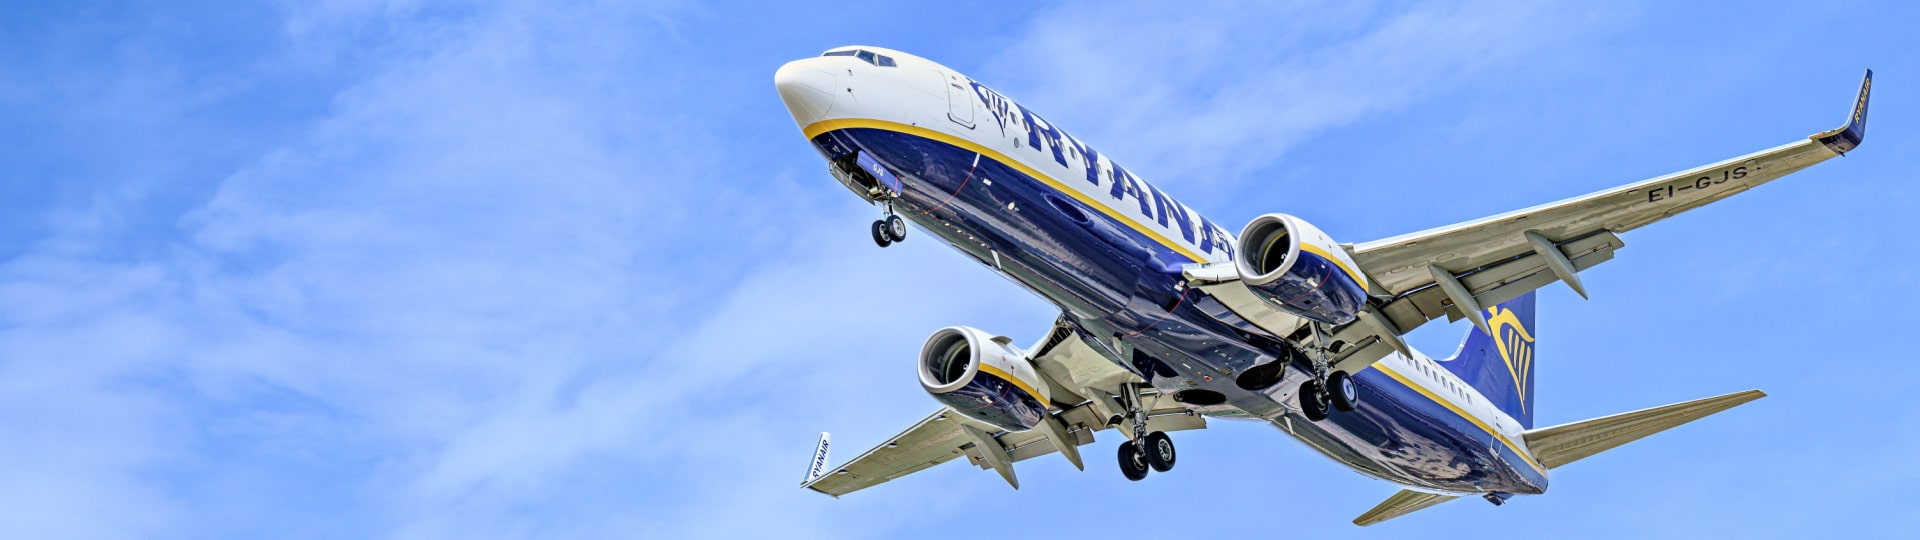 Ryanair má za pololetí rekordní zisk